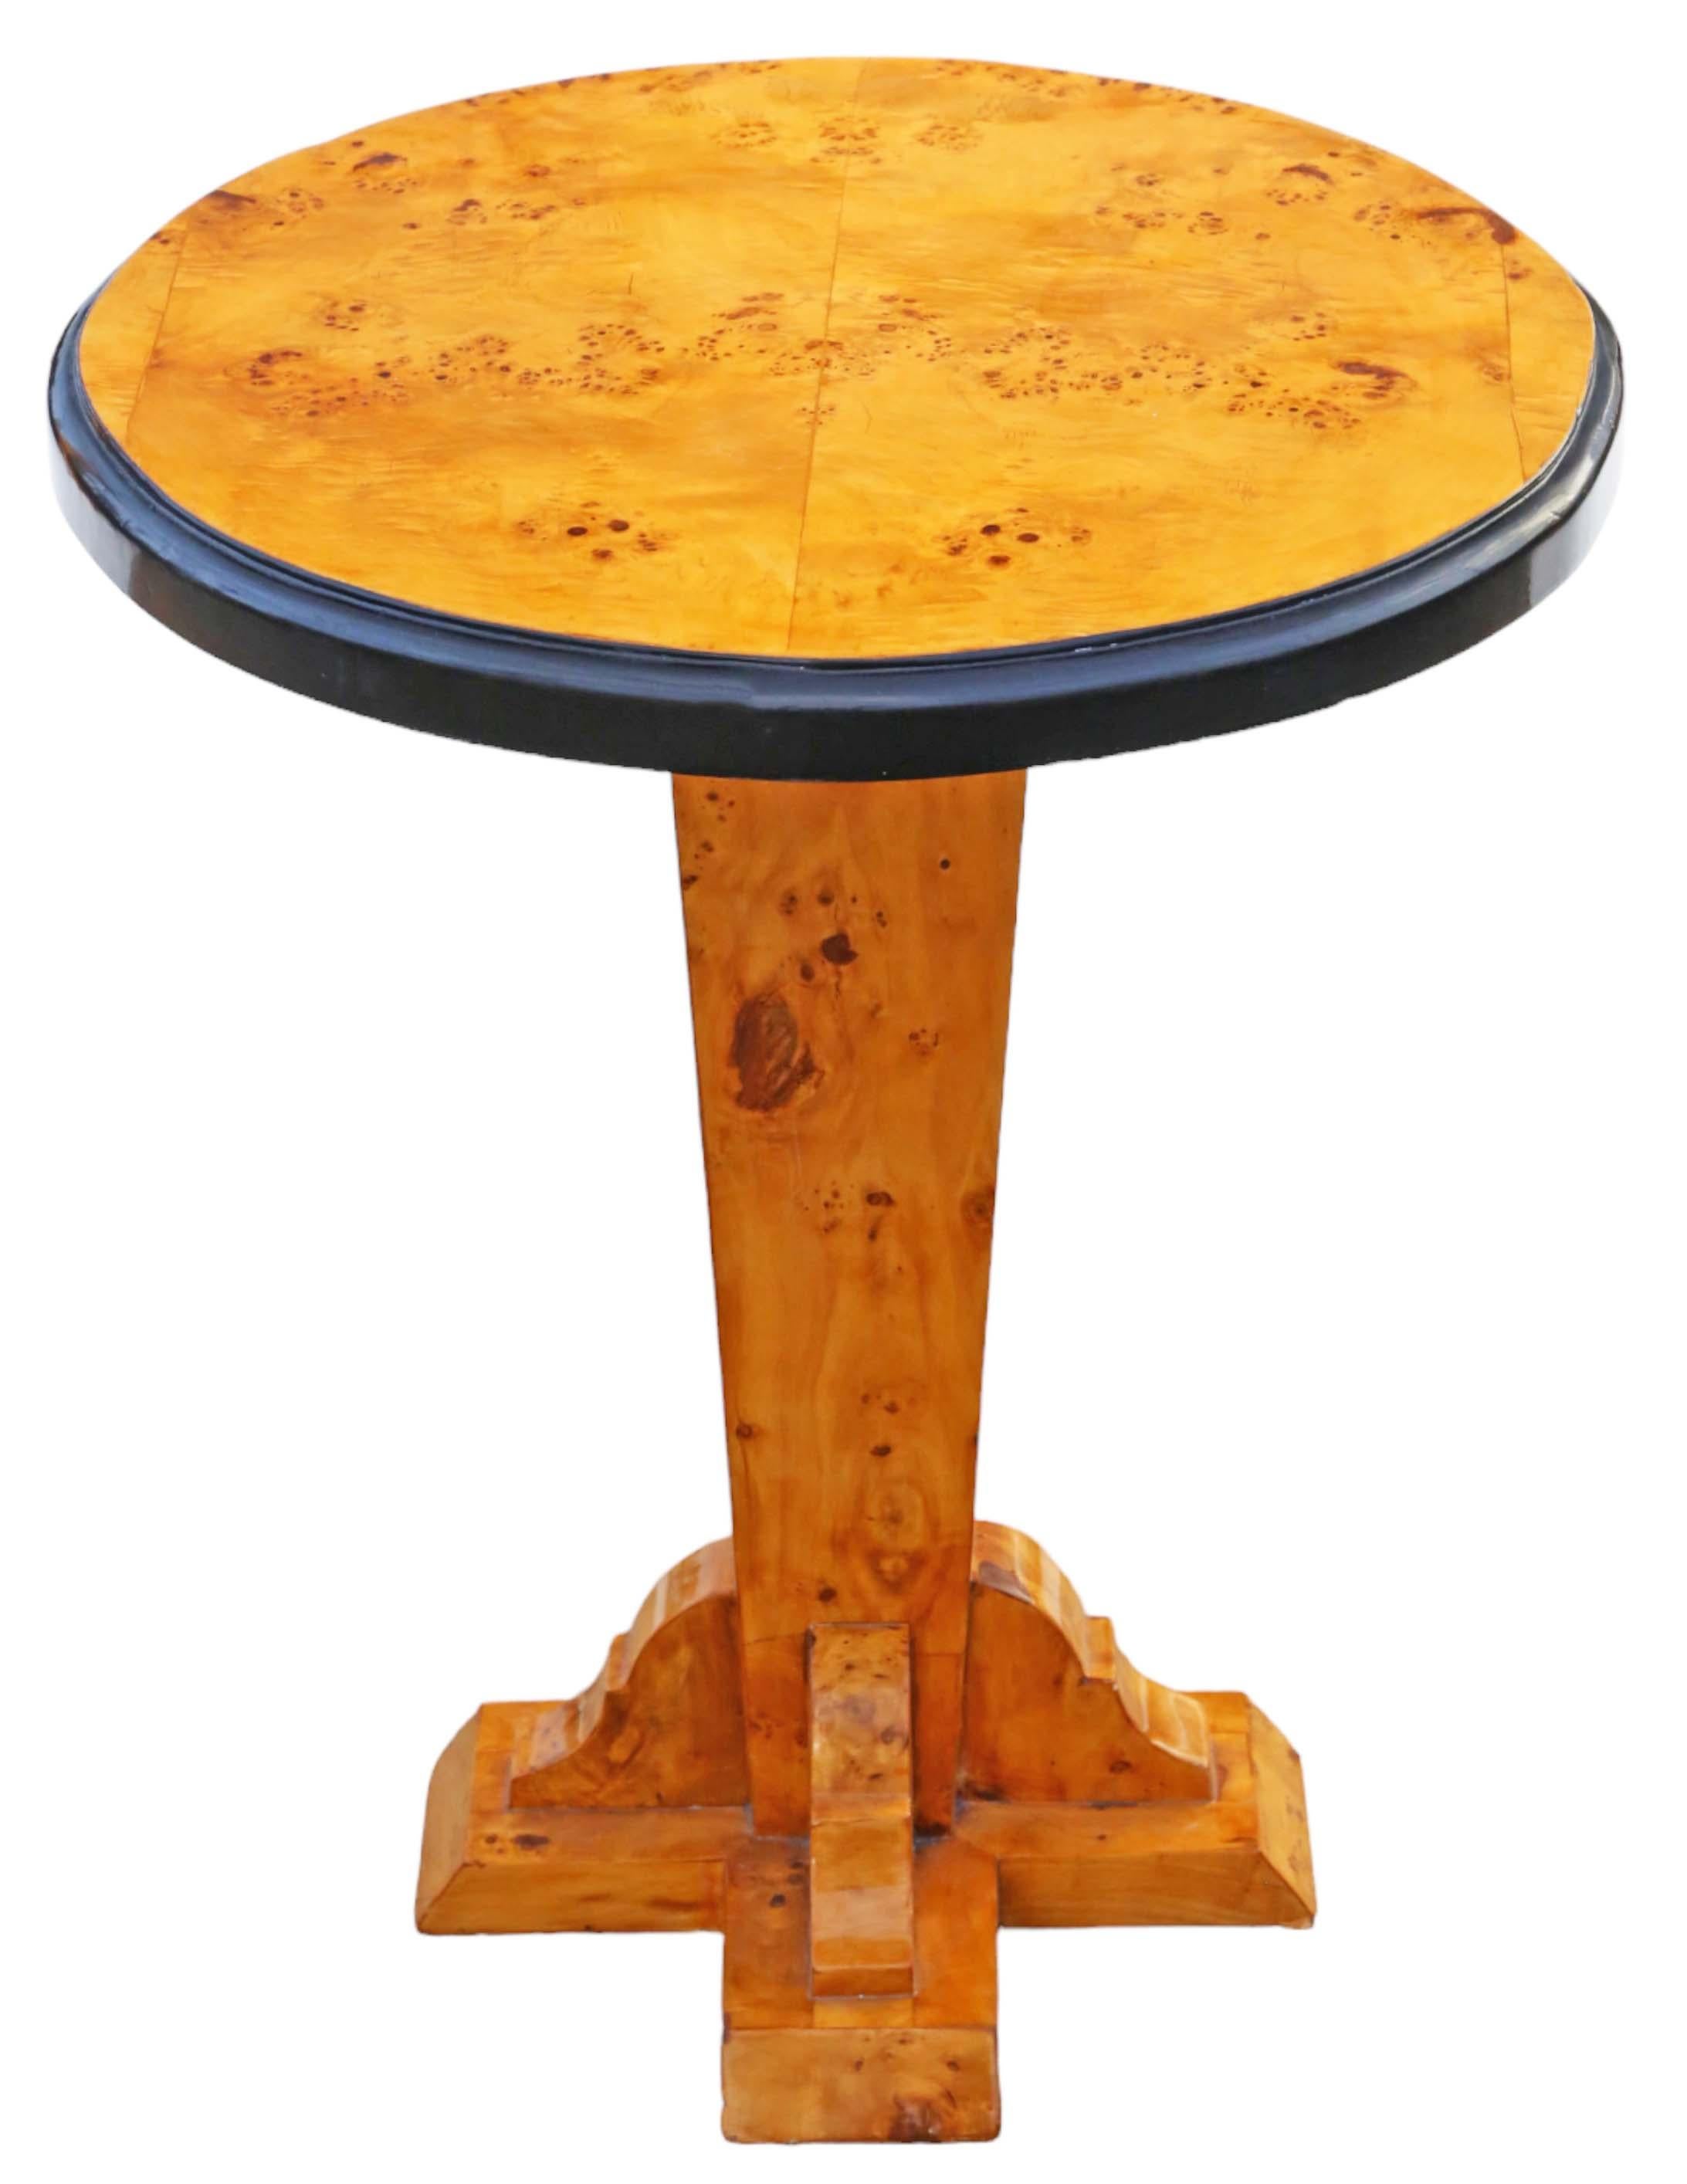 Vintage späten 20. Jahrhundert Wurzel Eibe Sockel Lampe oder Beistelltisch.

Der Tisch ist solide, ohne lose Verbindungen und präsentiert sich als charmantes und seltenes dekoratives Fundstück.

Es gibt keine Anzeichen für Holzwürmer, und die